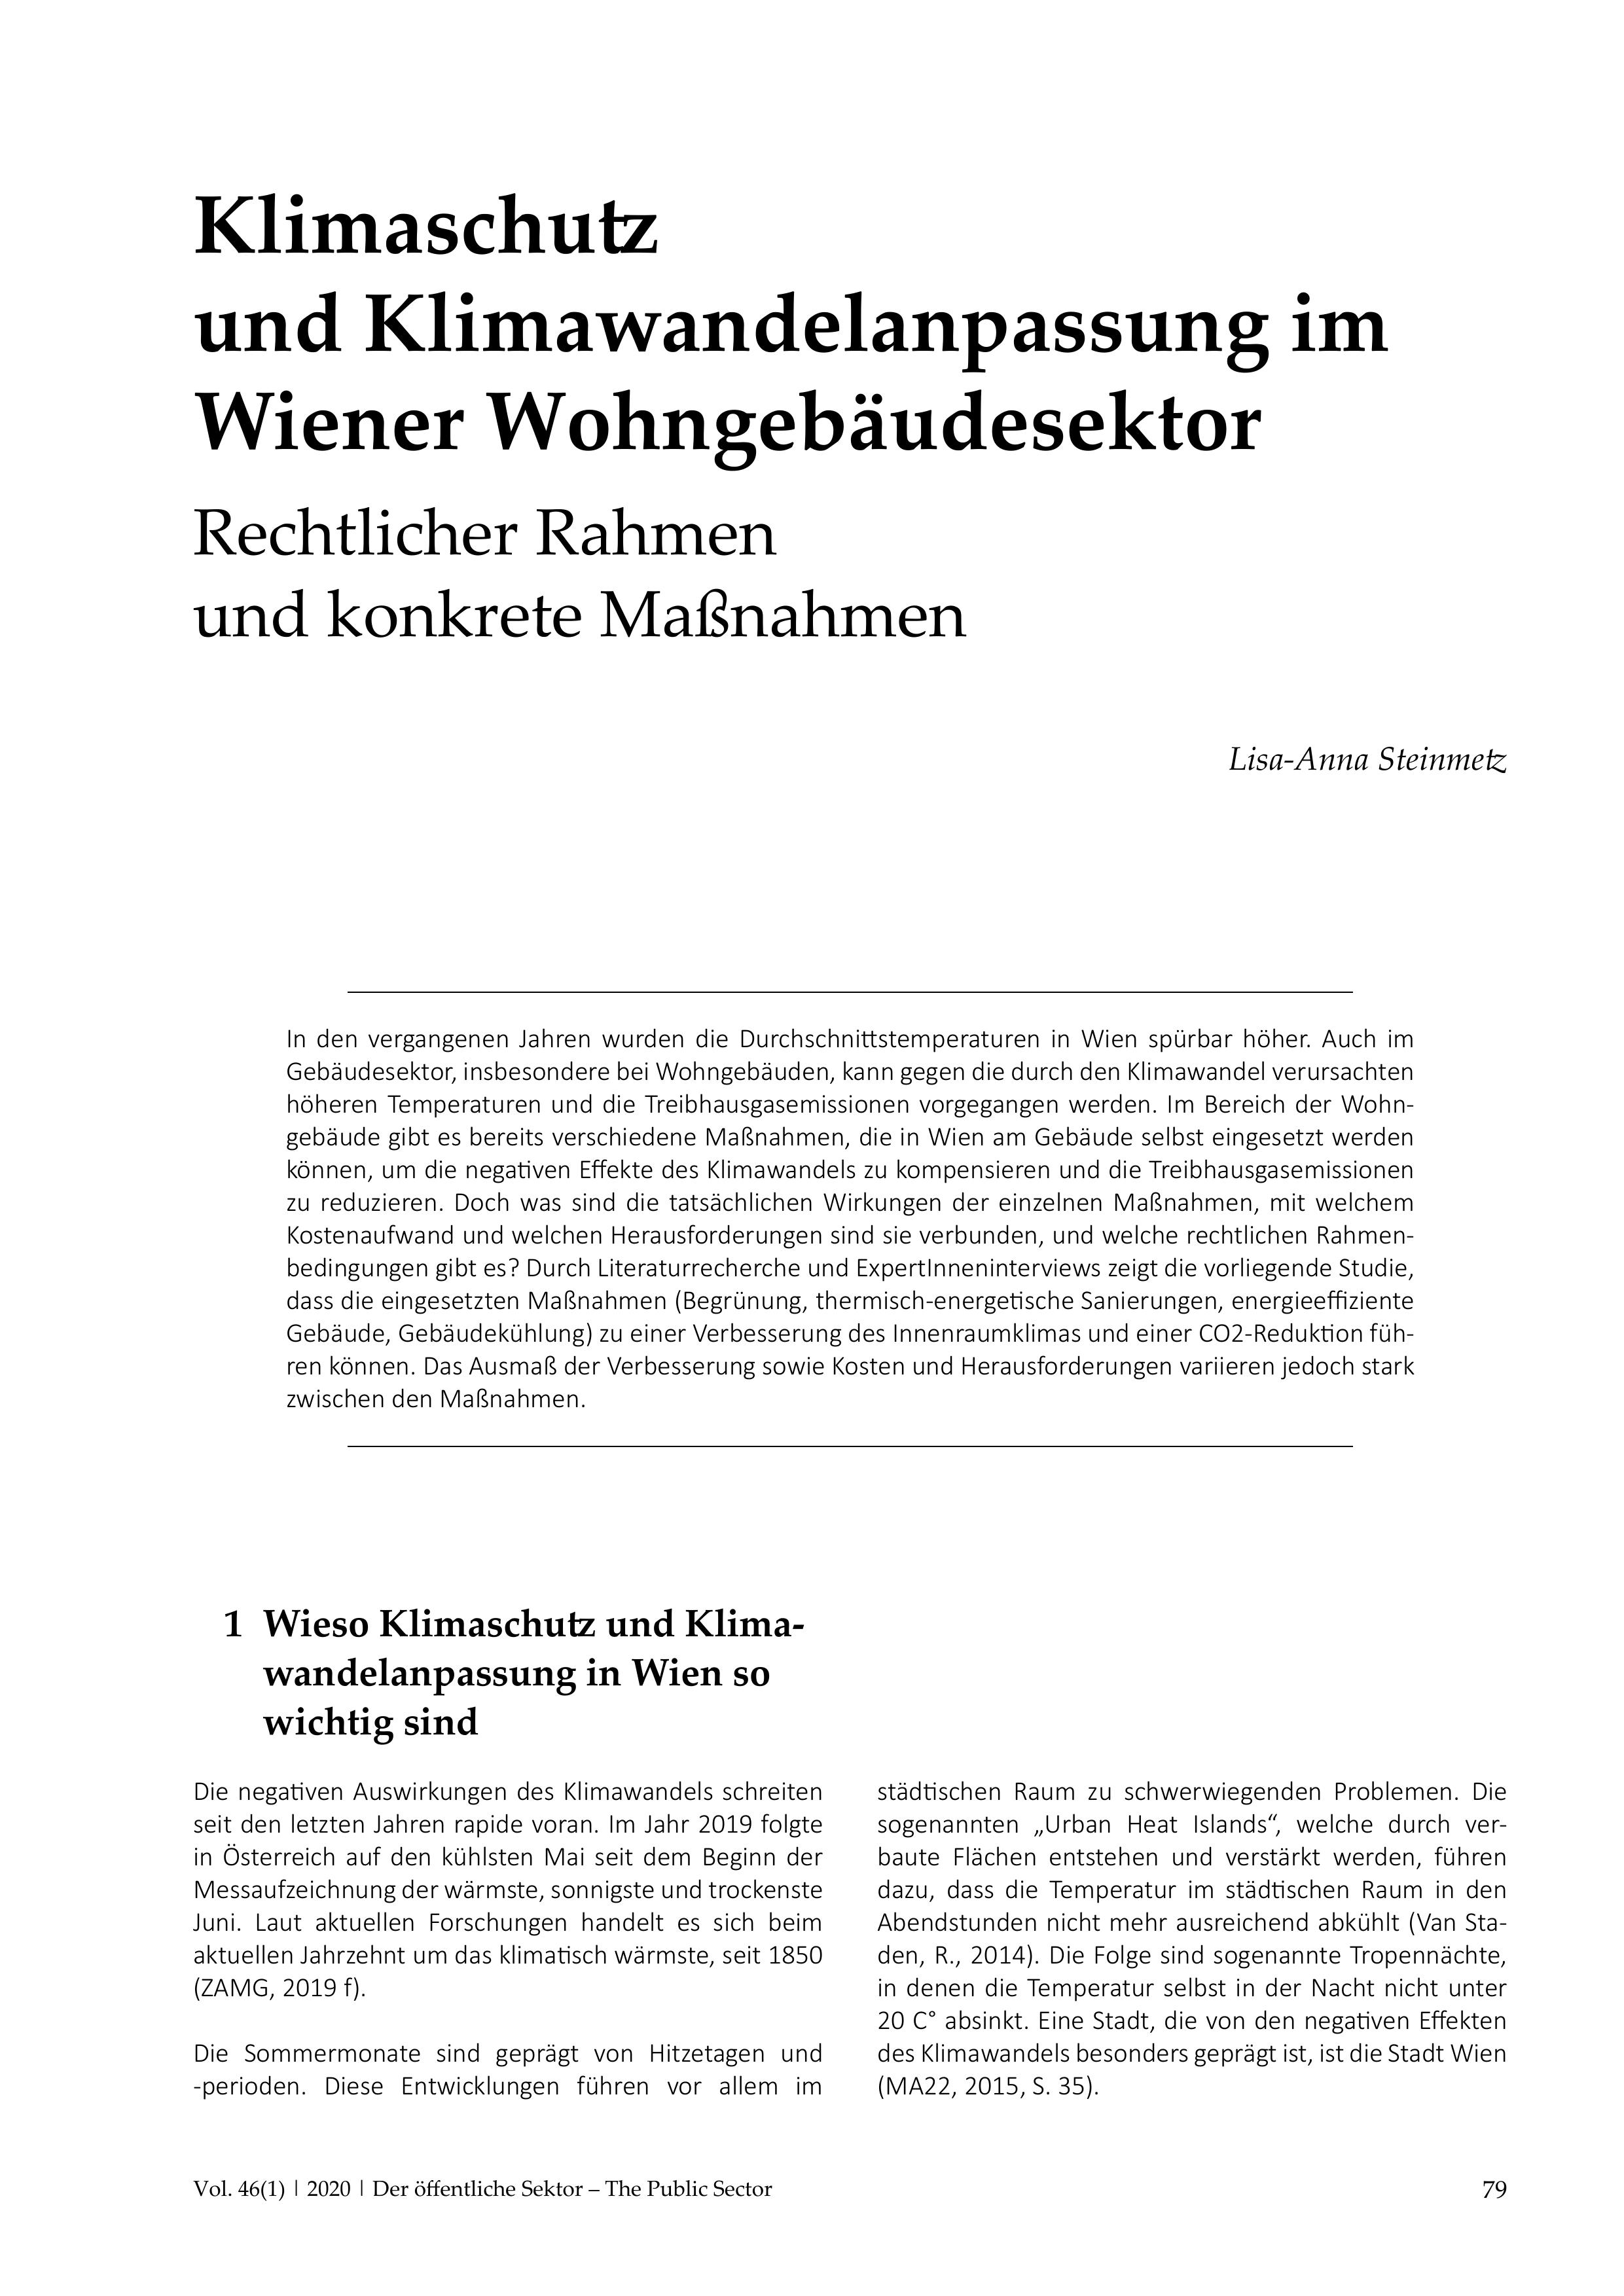 Klimaschutz und Klimawandelanpassung im Wiener Wohngebäudesektor